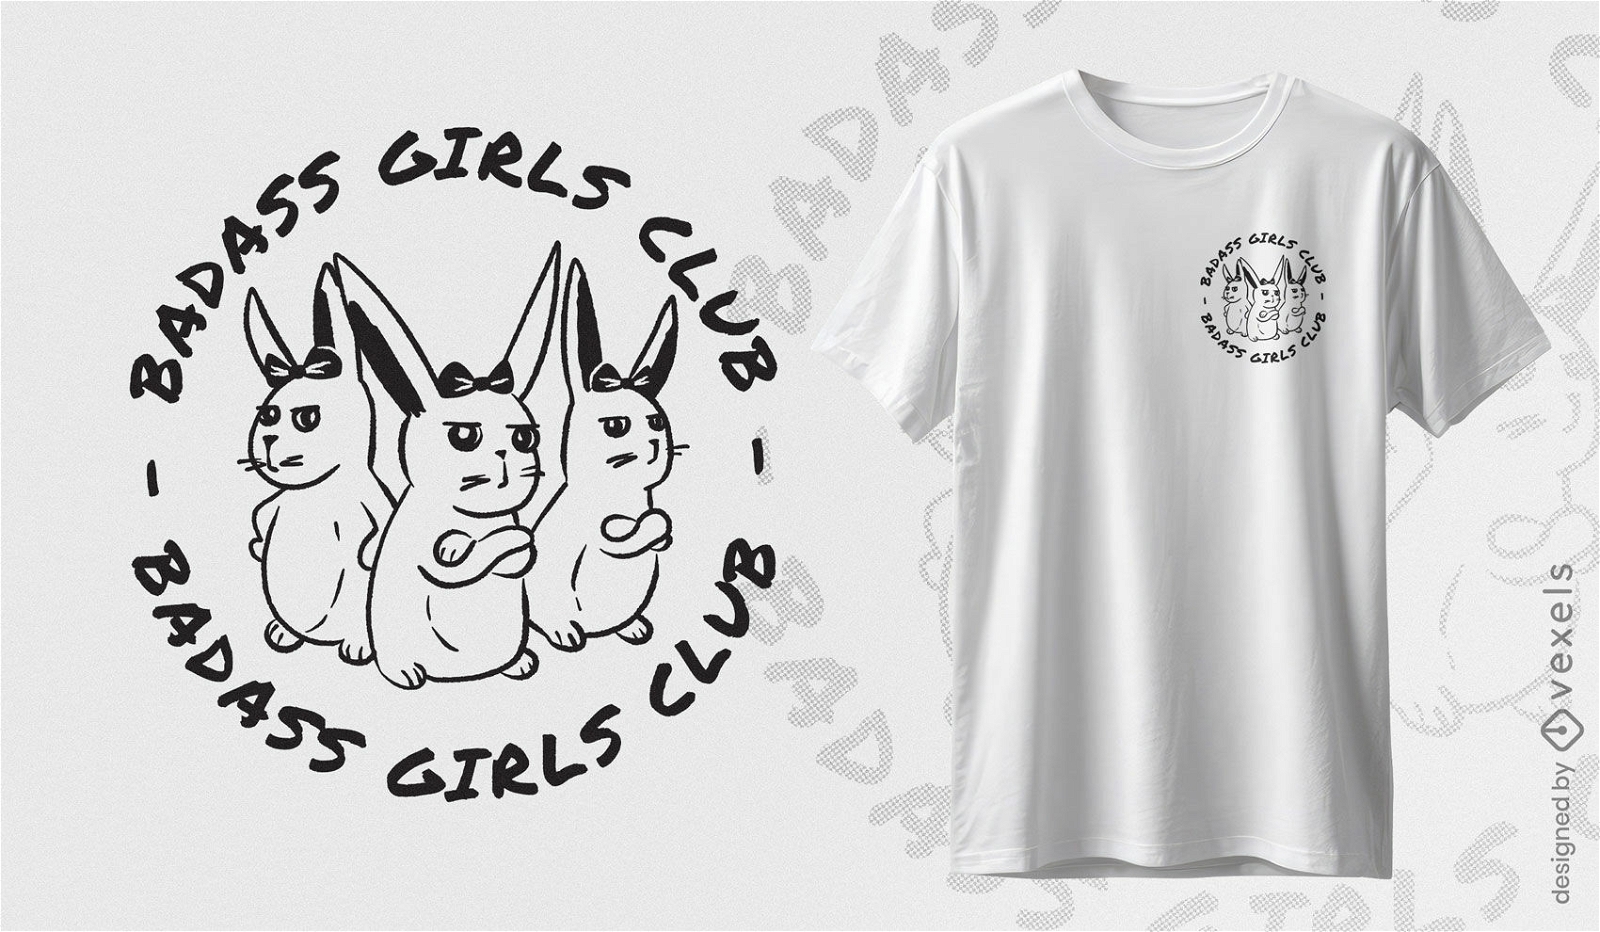 Dise?o de camiseta de conejitas del club de chicas rudos.